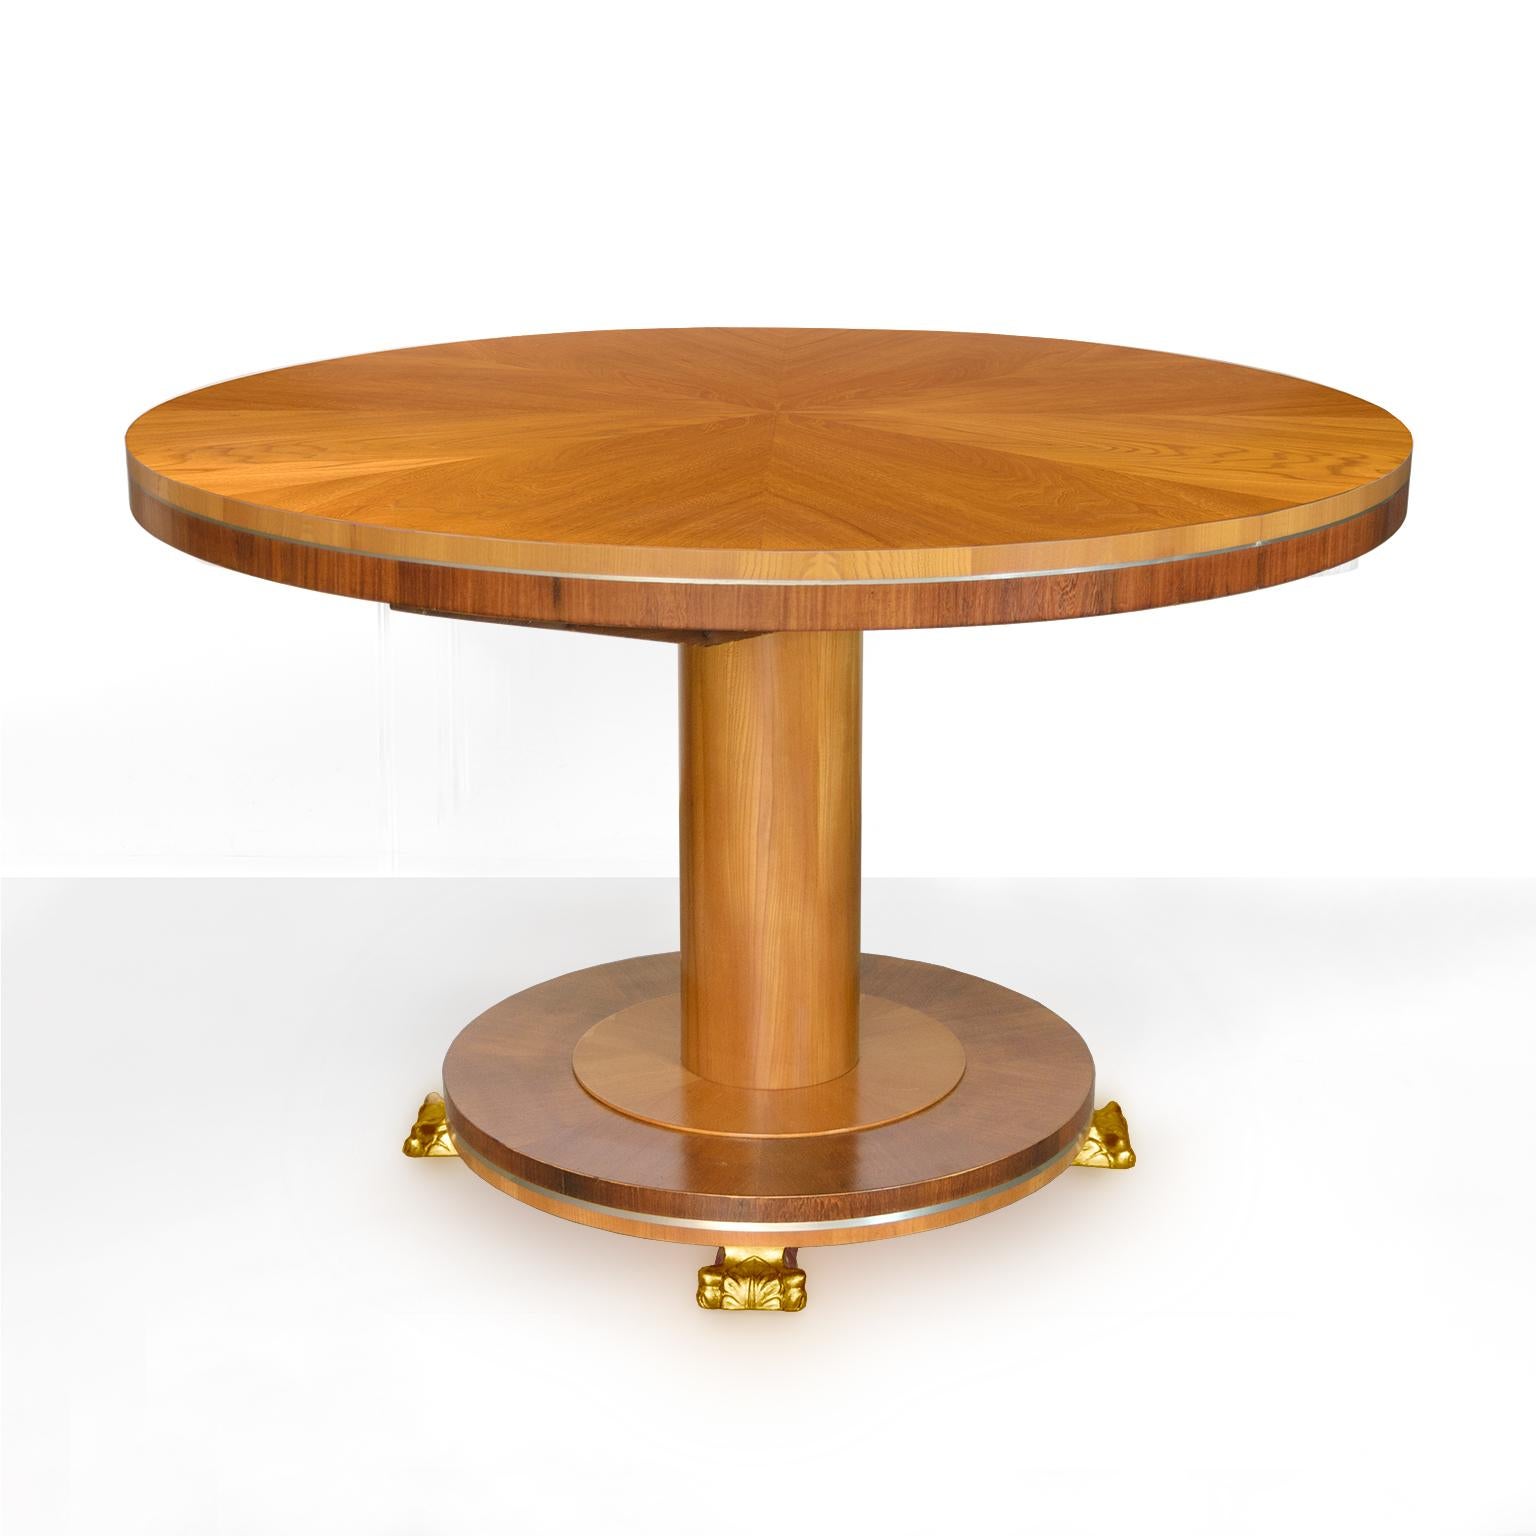 Rare table de salle à manger suédoise Art Déco (avec 4 chaises assorties vendues séparément) de l'architecte Carl Bergsten. La table est plaquée d'orme et d'acajou, avec des incrustations d'étain et des pieds sculptés en bois doré. Le tableau